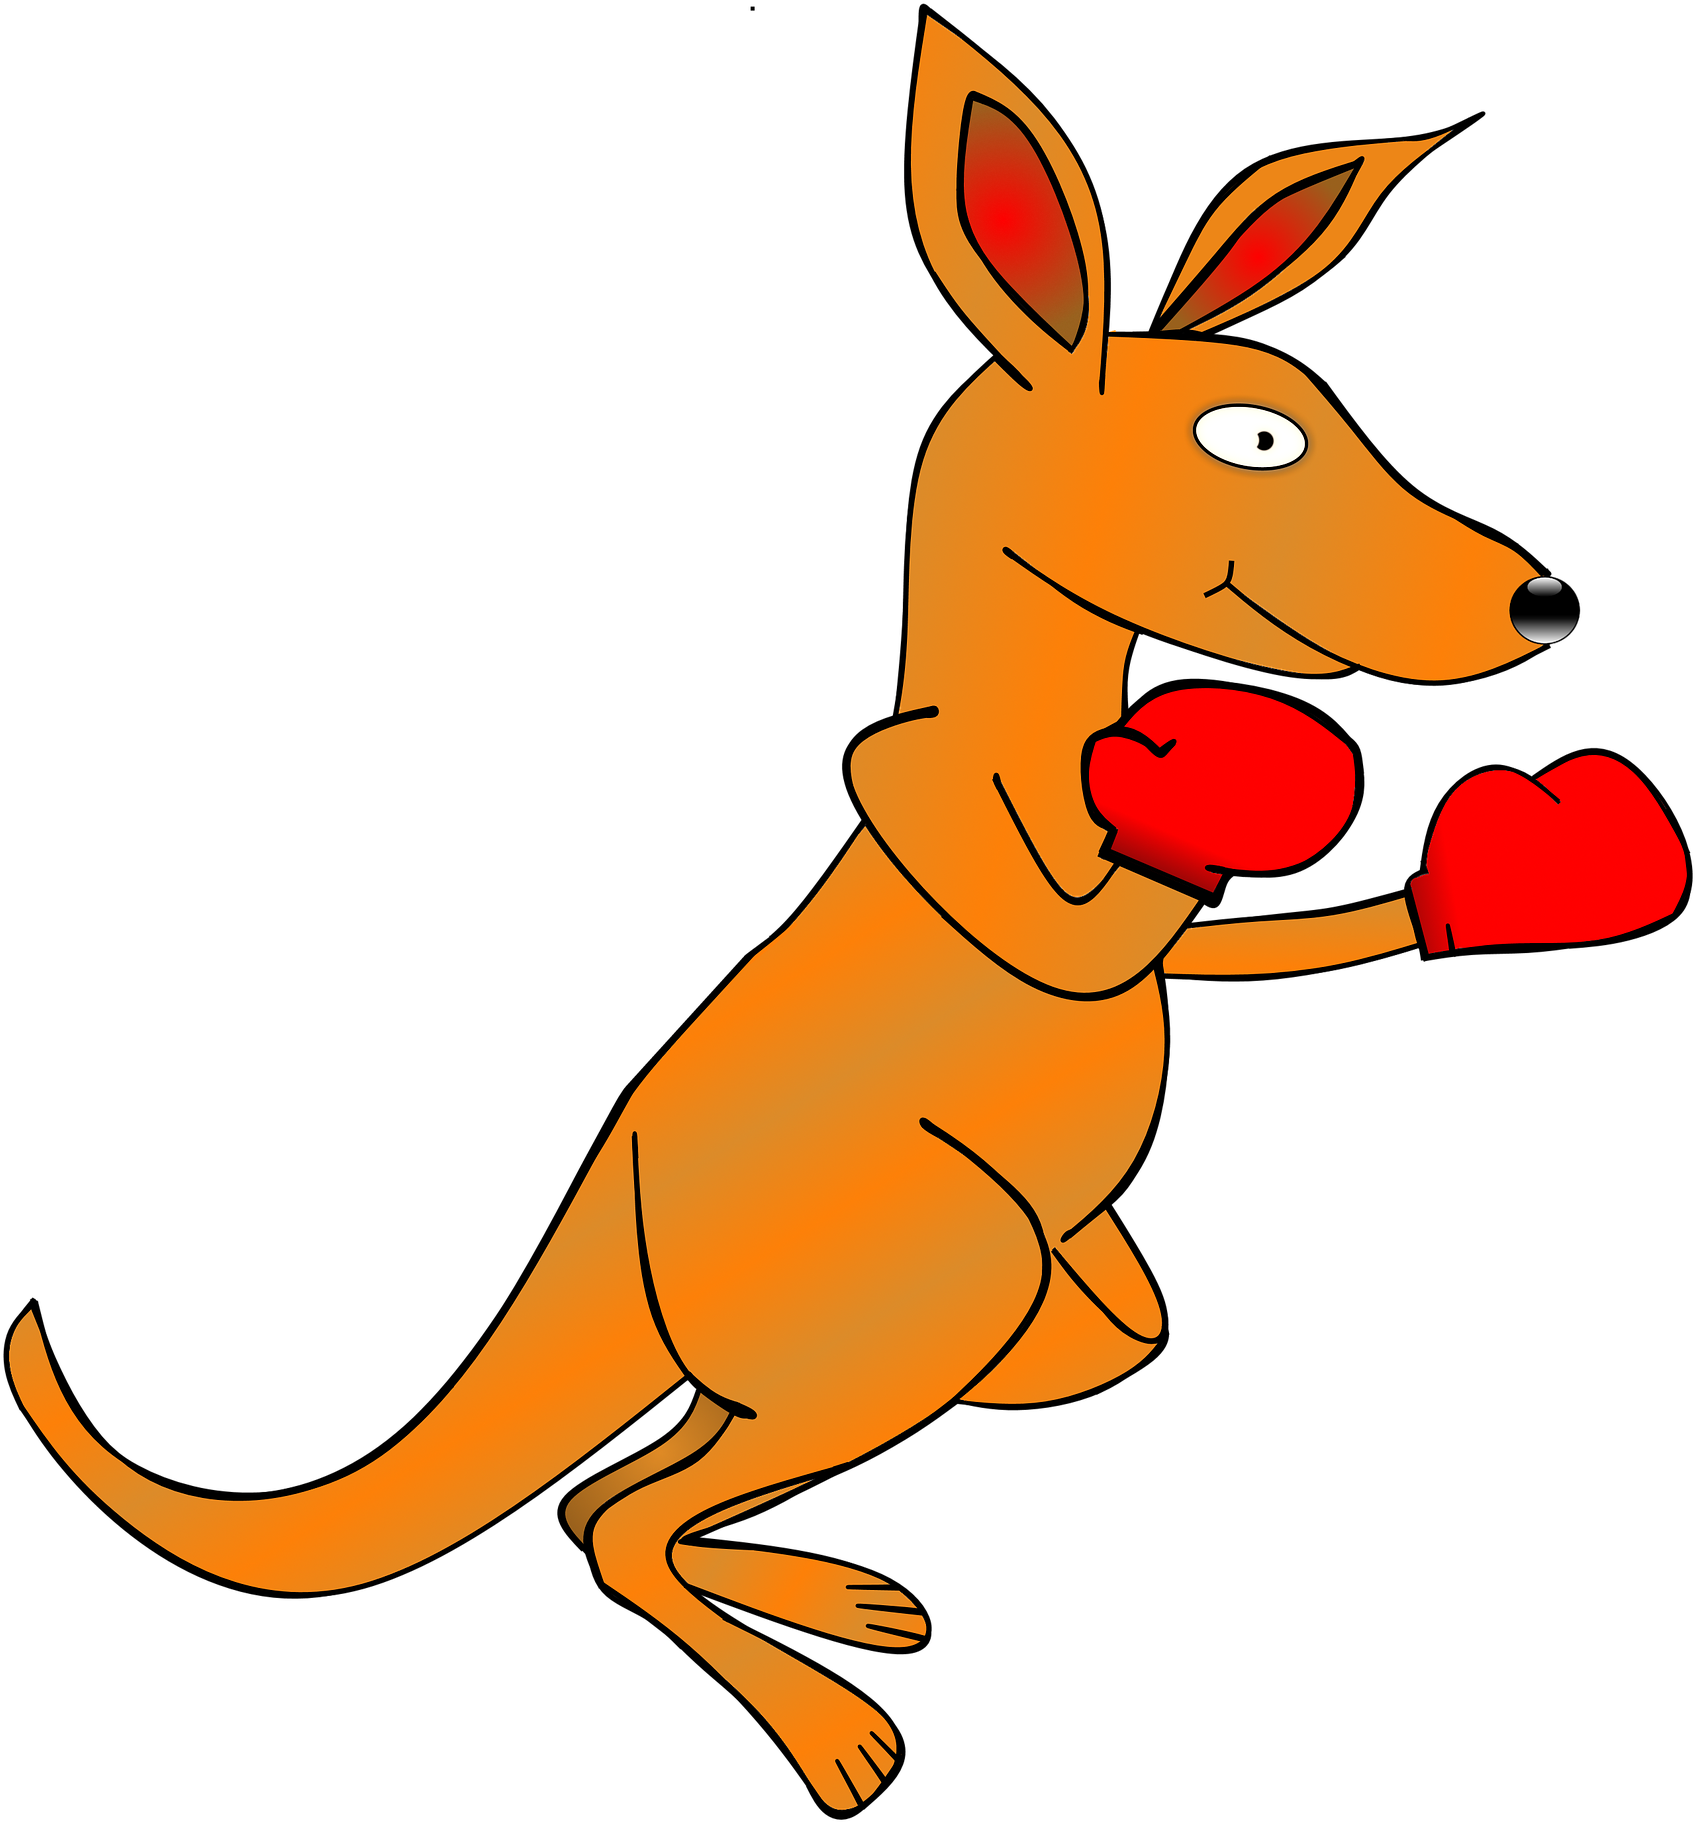 A Cartoon Kangaroo Wearing Boxing Gloves